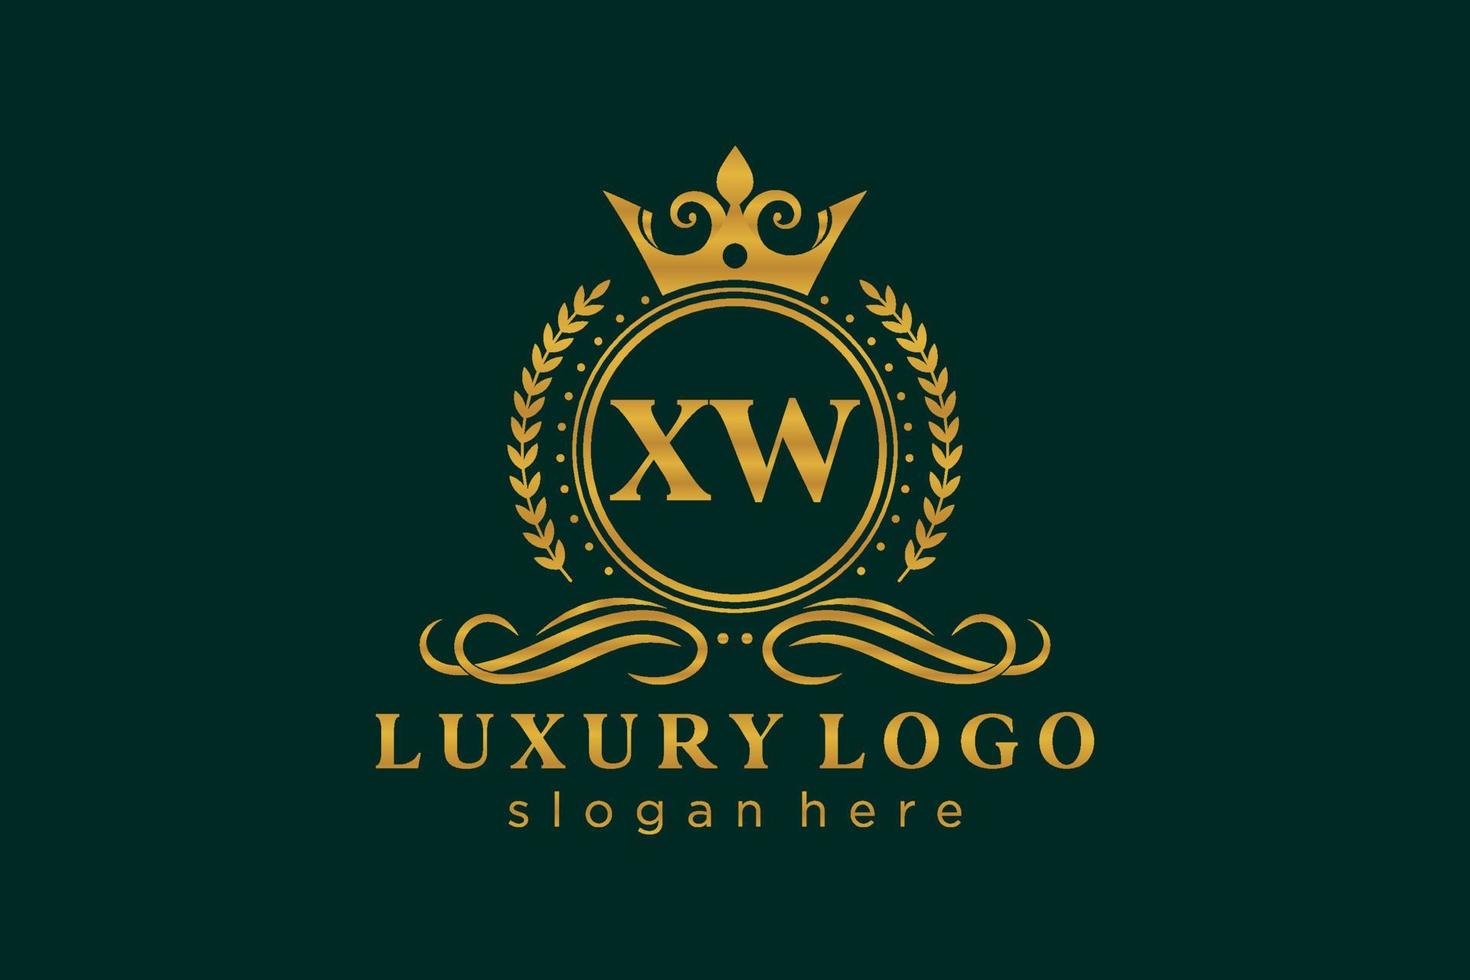 plantilla de logotipo de lujo real de letra xw inicial en arte vectorial para restaurante, realeza, boutique, cafetería, hotel, heráldica, joyería, moda y otras ilustraciones vectoriales. vector